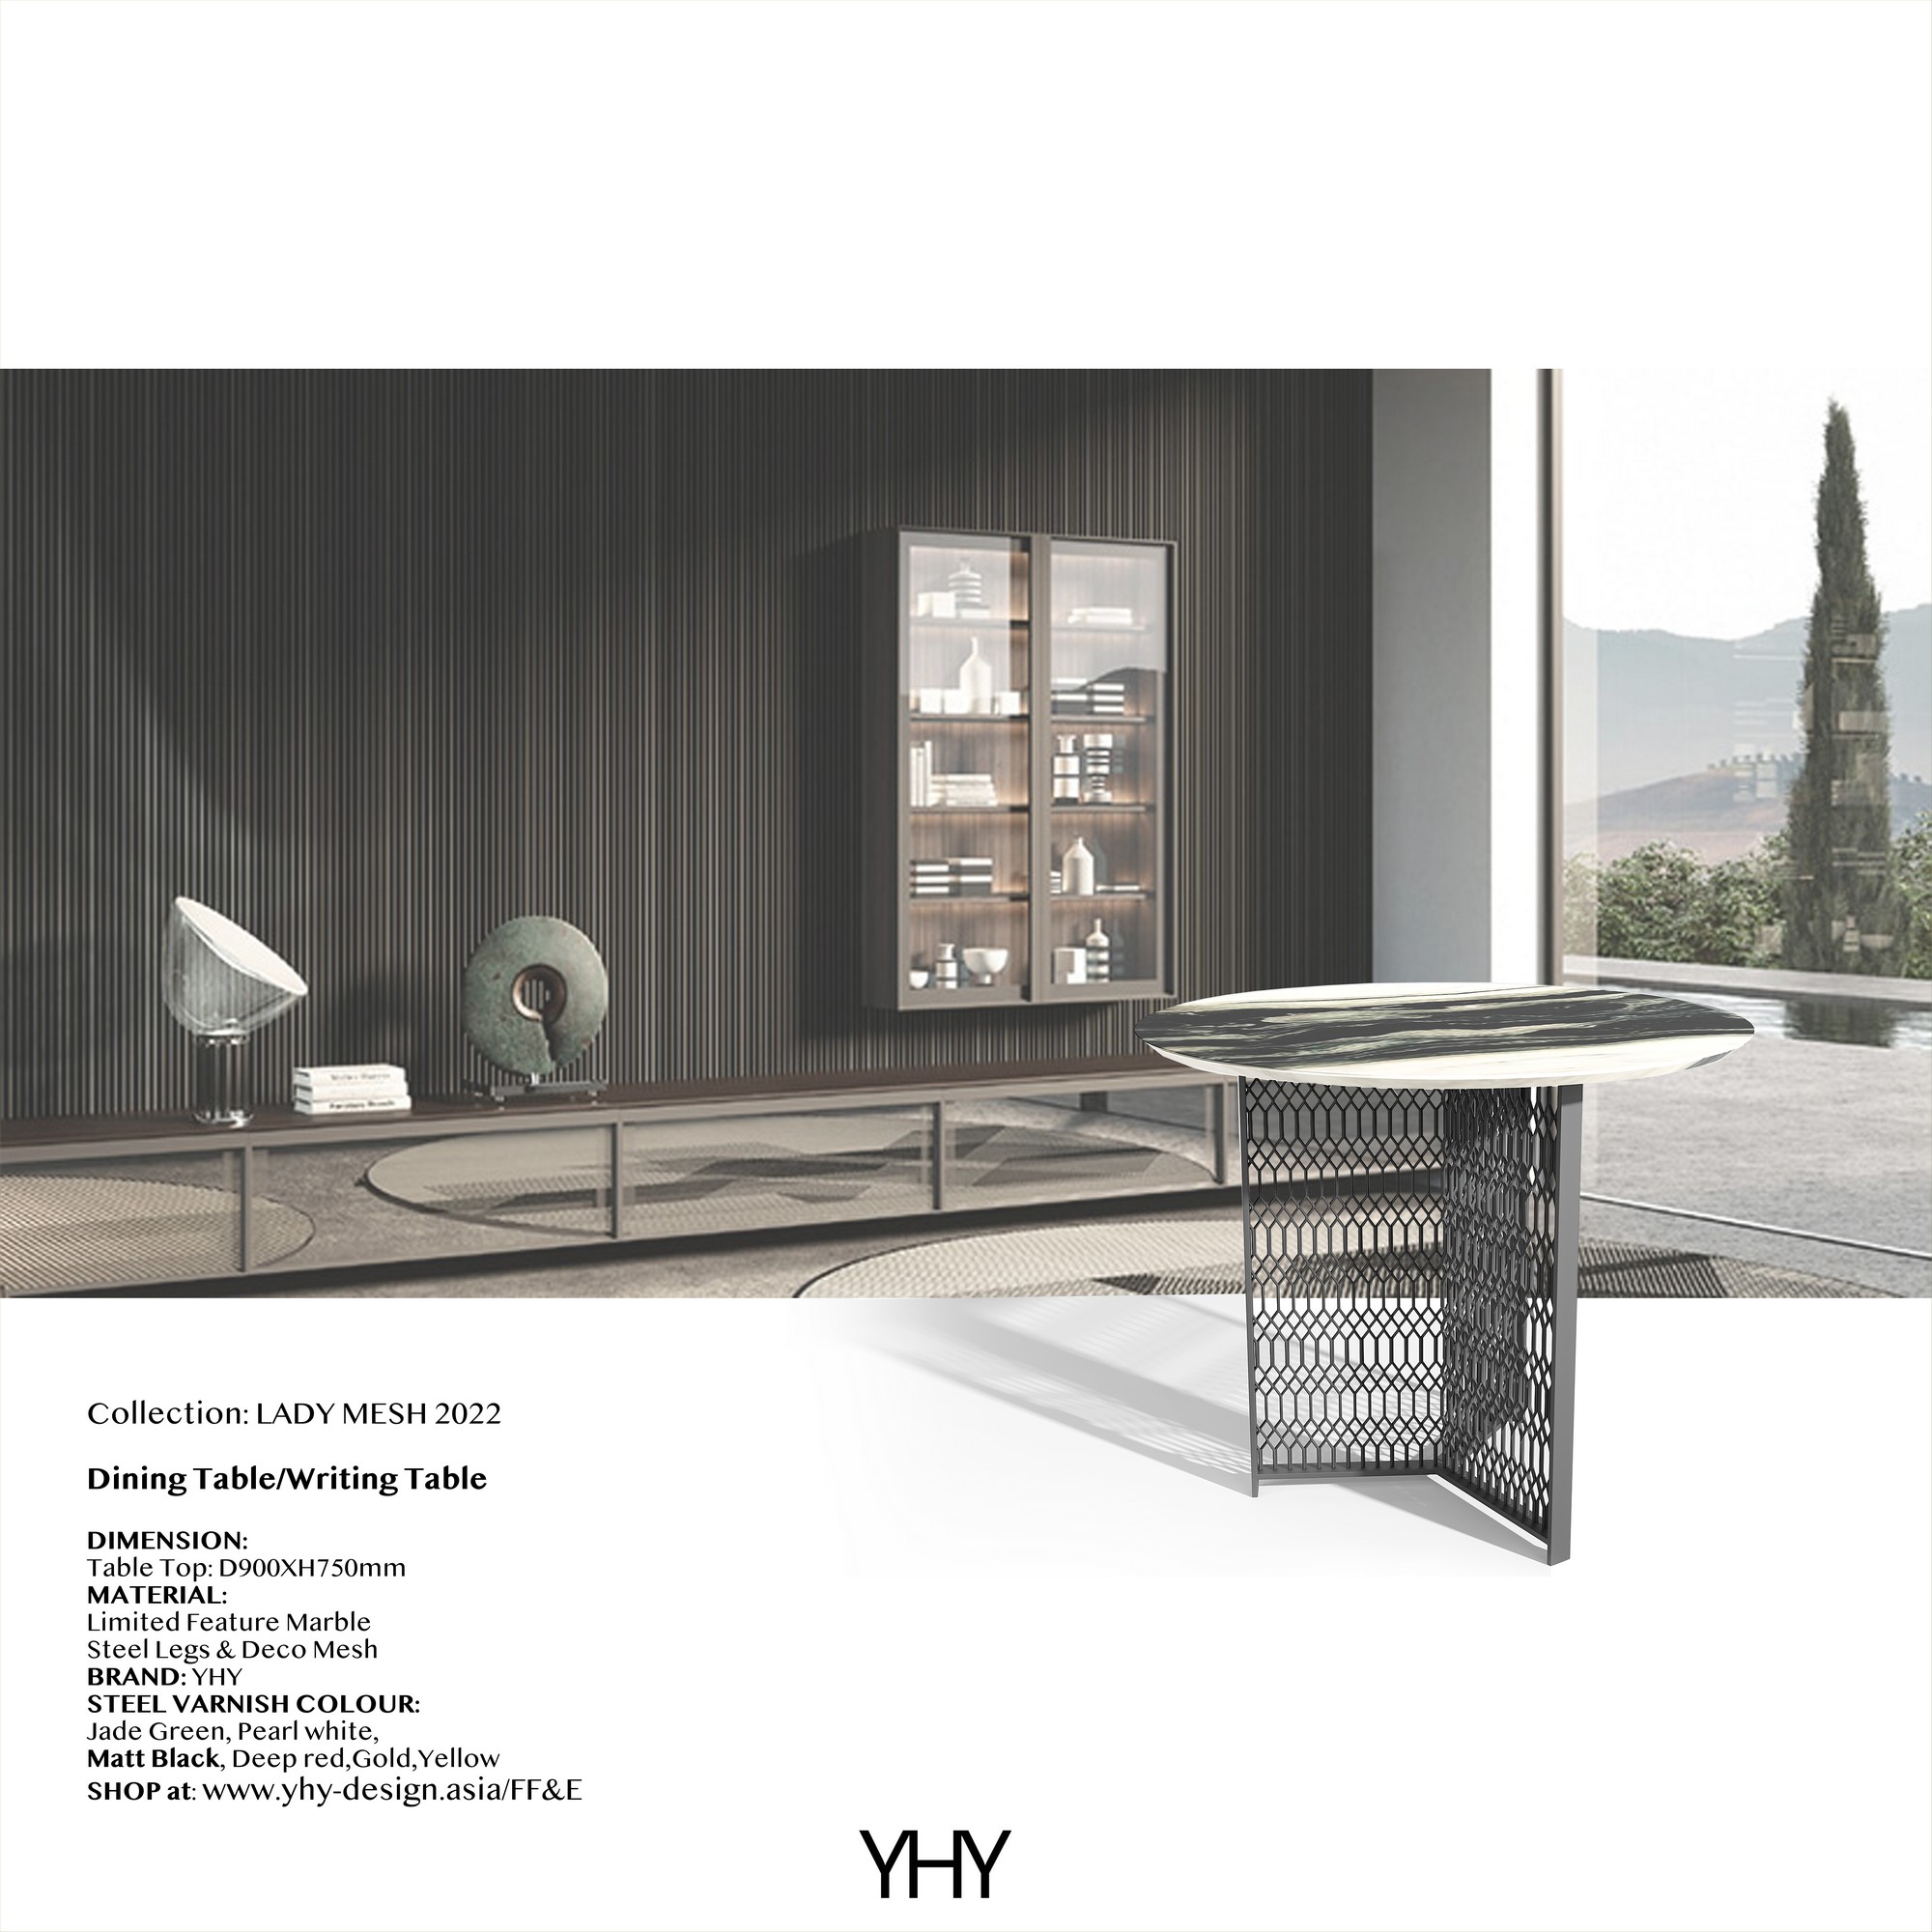 Lady Mesh Archives - YHY Design Interior Design Consultant Studio